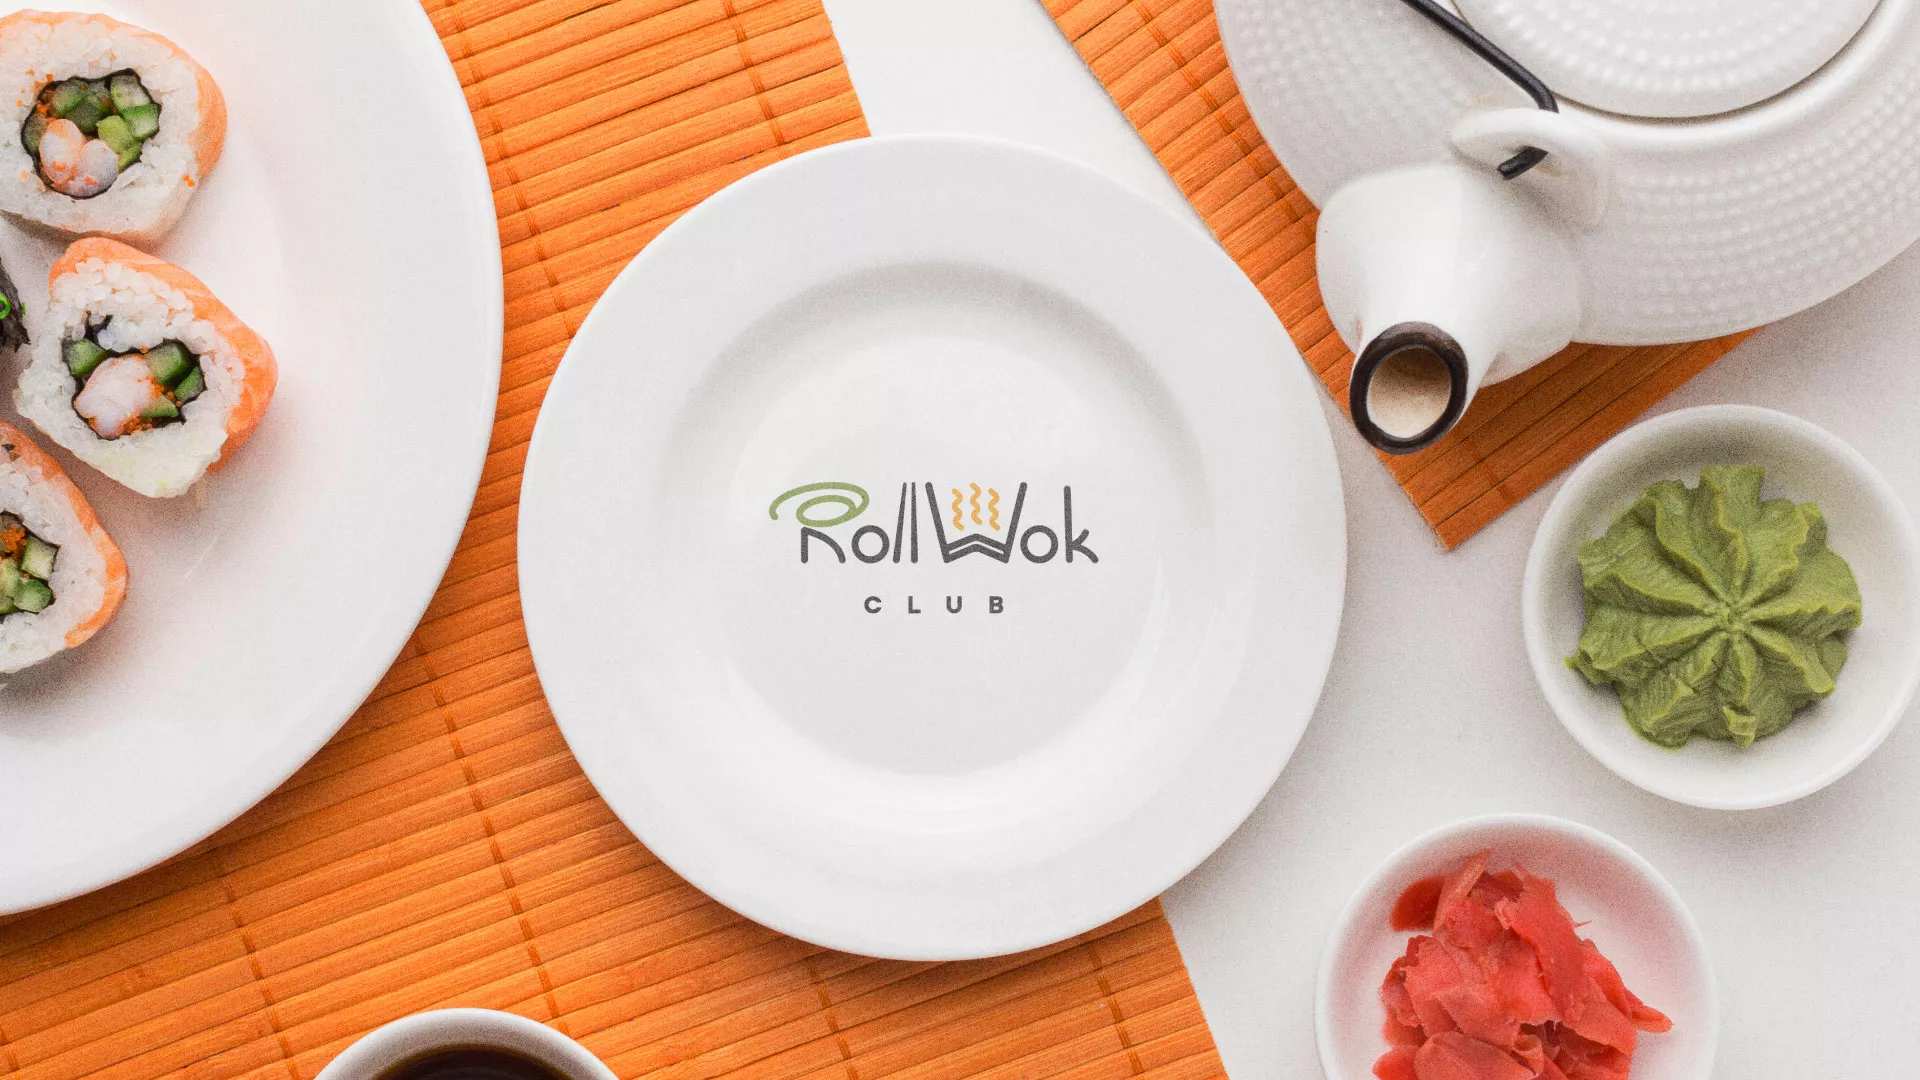 Разработка логотипа и фирменного стиля суши-бара «Roll Wok Club» в Братске